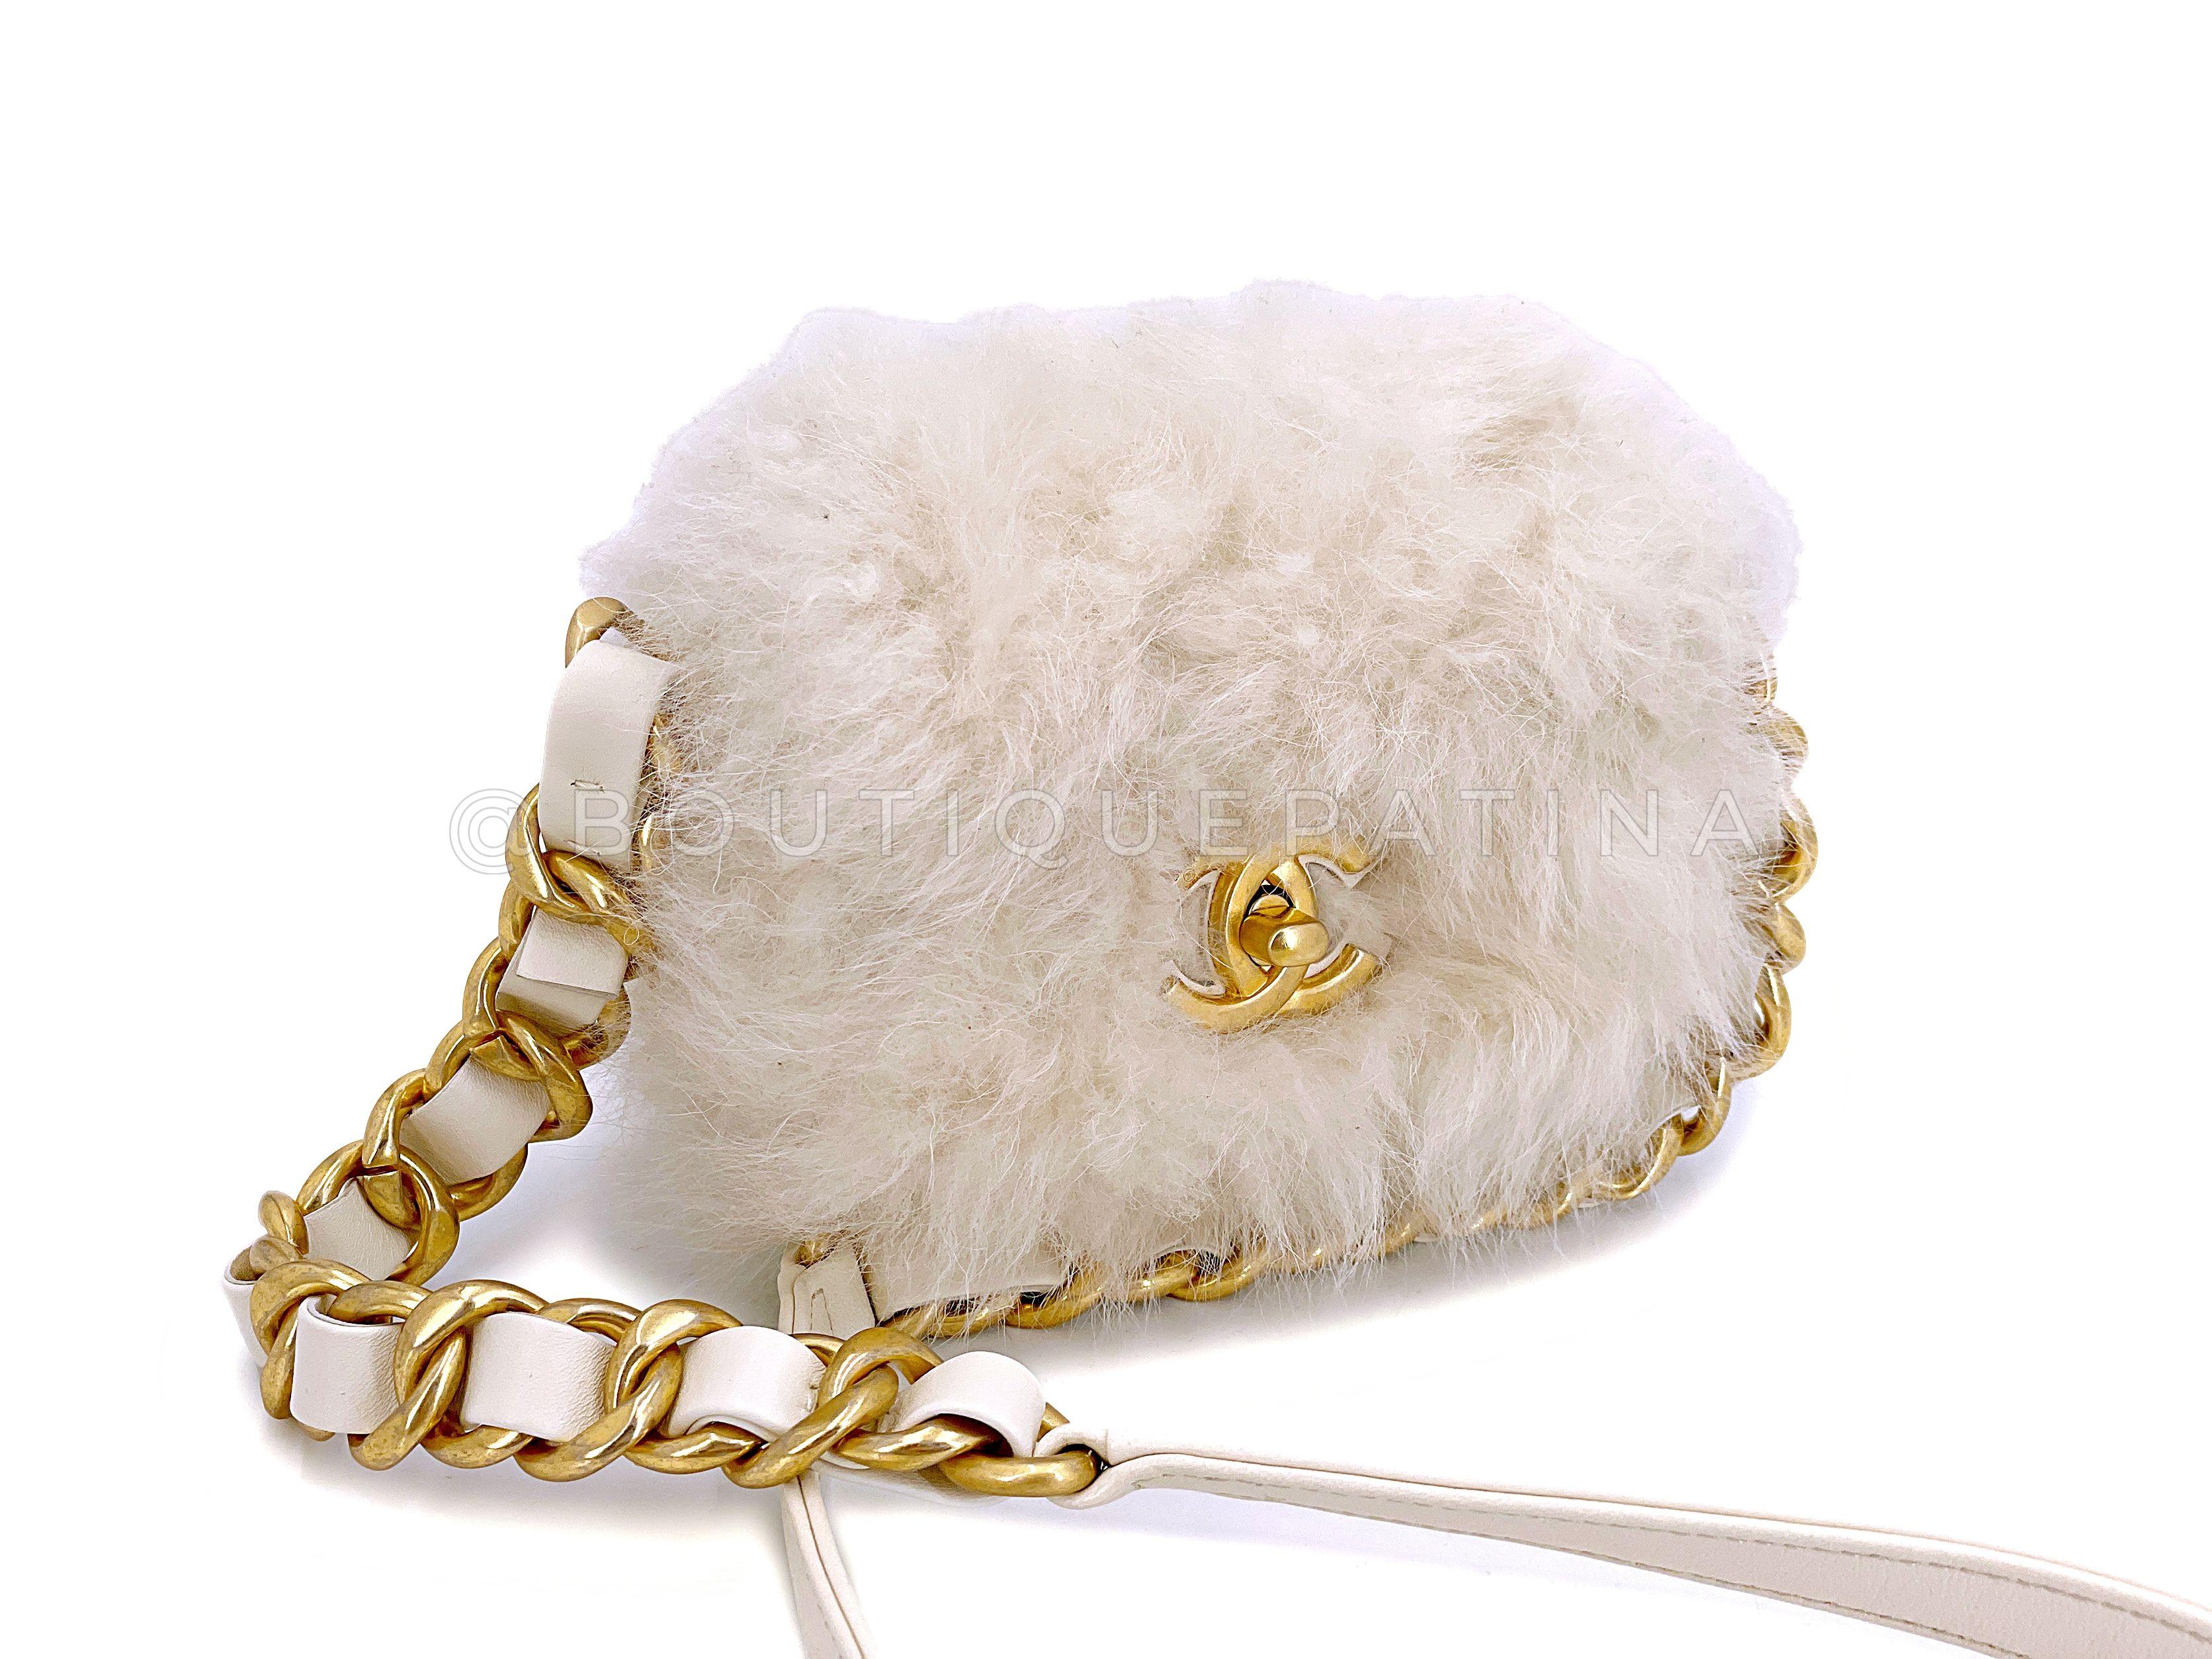 Artikel speichern: 67242

Wir lieben Chanel White Ivory Fur Mini Crossbody Flap Bag Chunky Chain  nicht nur, weil er schick und saisonal ist, sondern auch, weil er mit Kunstpelz umweltfreundlich ist. Der klobige, geflochtene Kettenriemen in